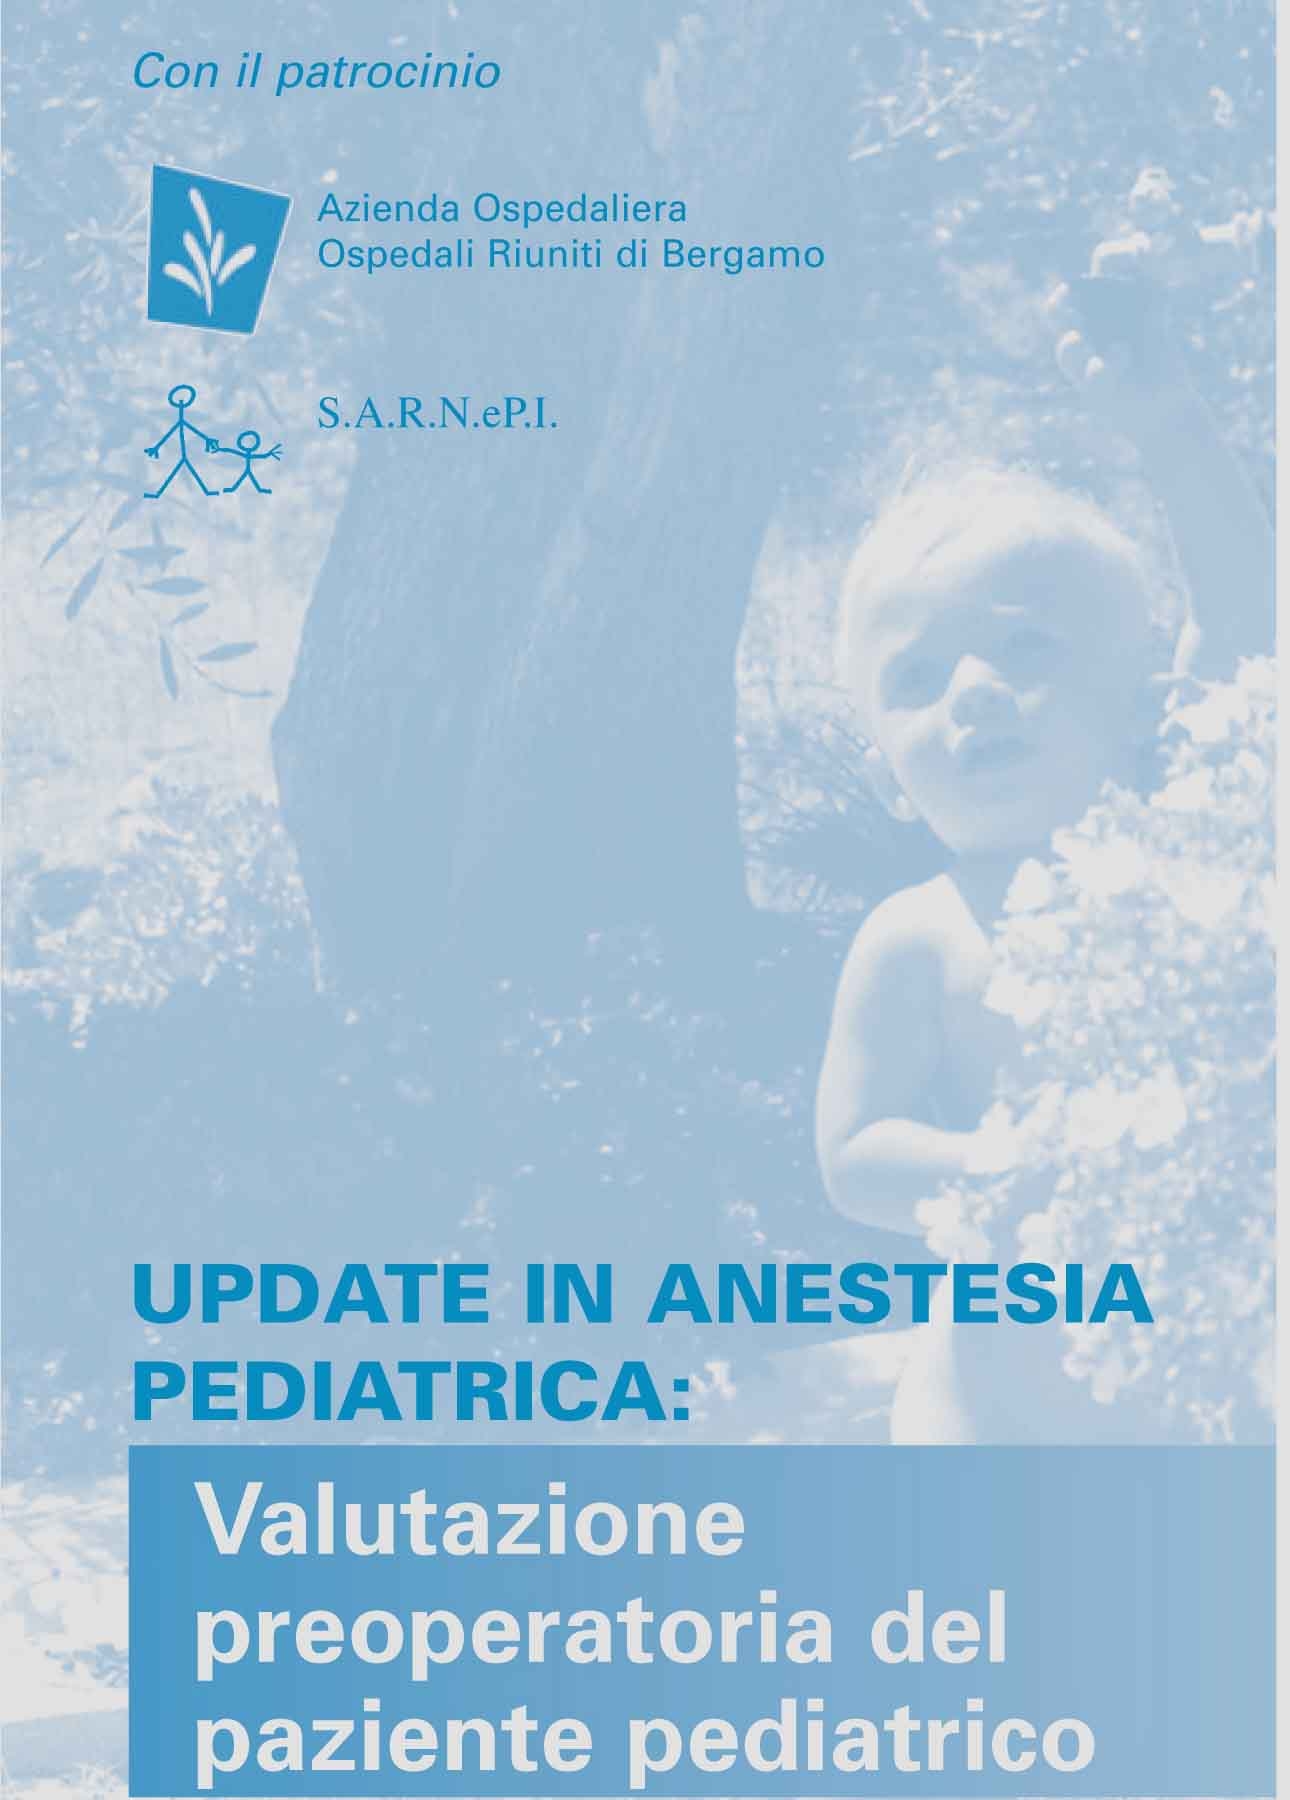 Update in Anestesia Pediatrica: Valutazione preoperatoria del paziente pediatrico